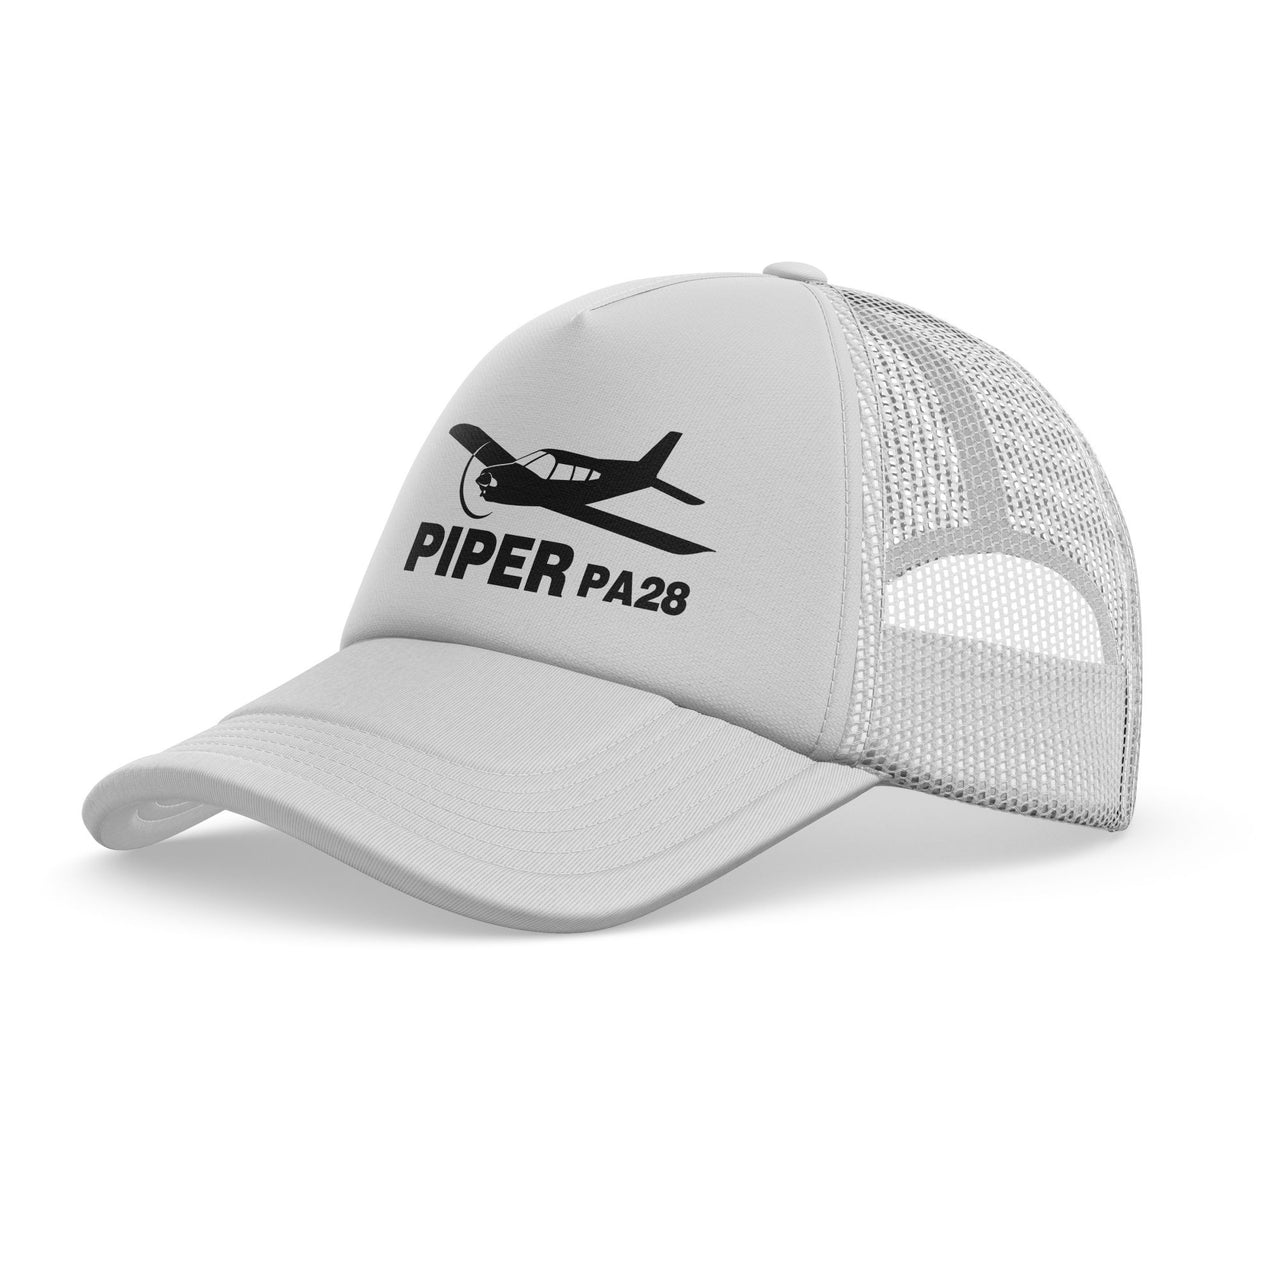 The Piper PA28 Designed Trucker Caps & Hats